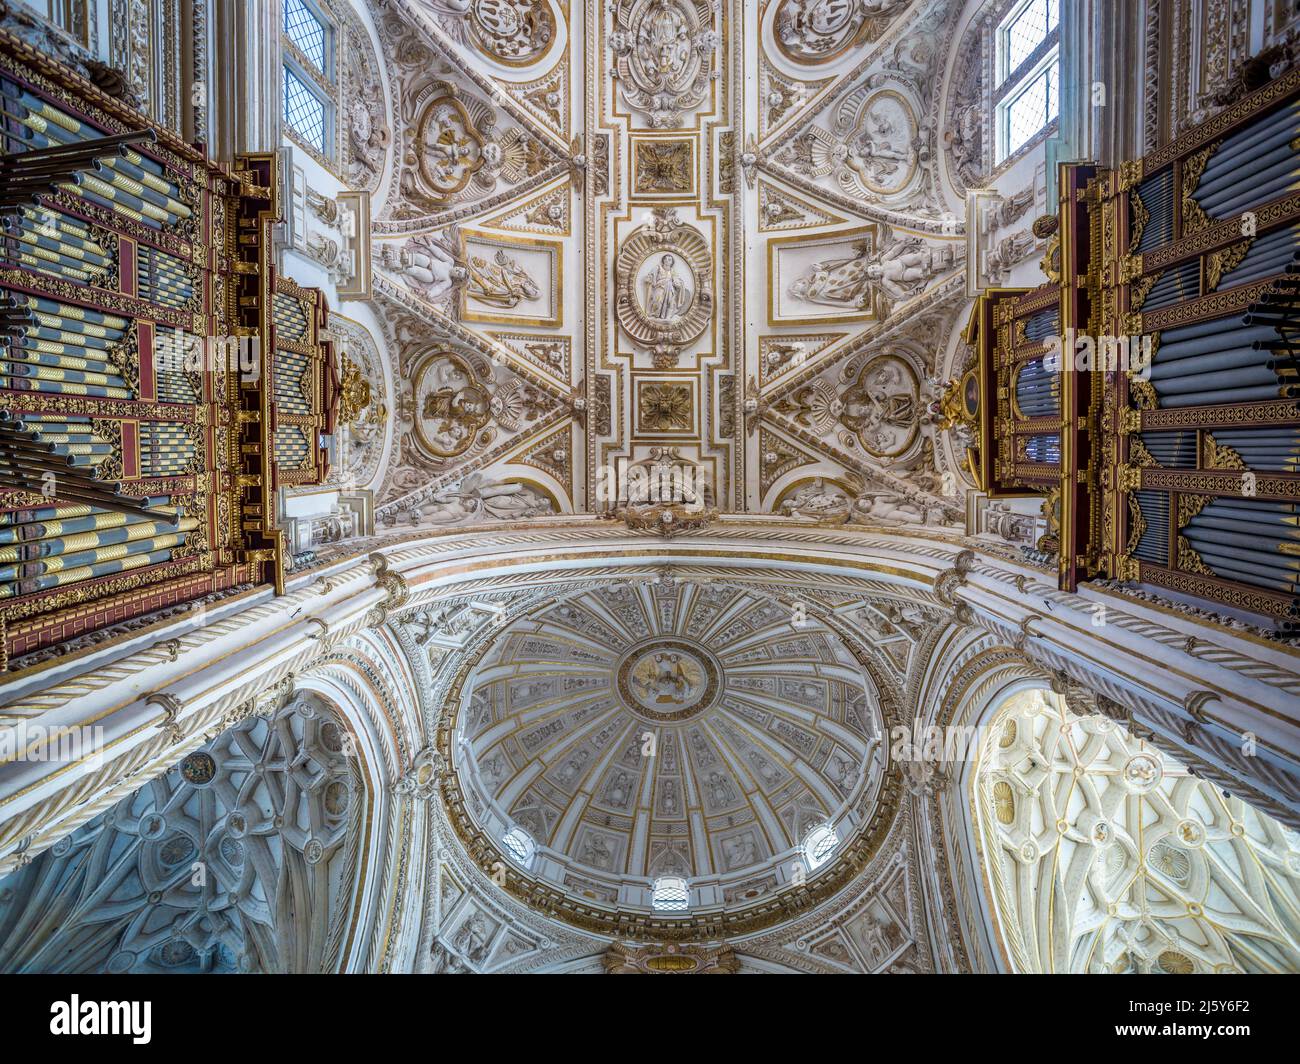 Cathédrale de la Mosquée de Cordoue, Espagne Banque D'Images